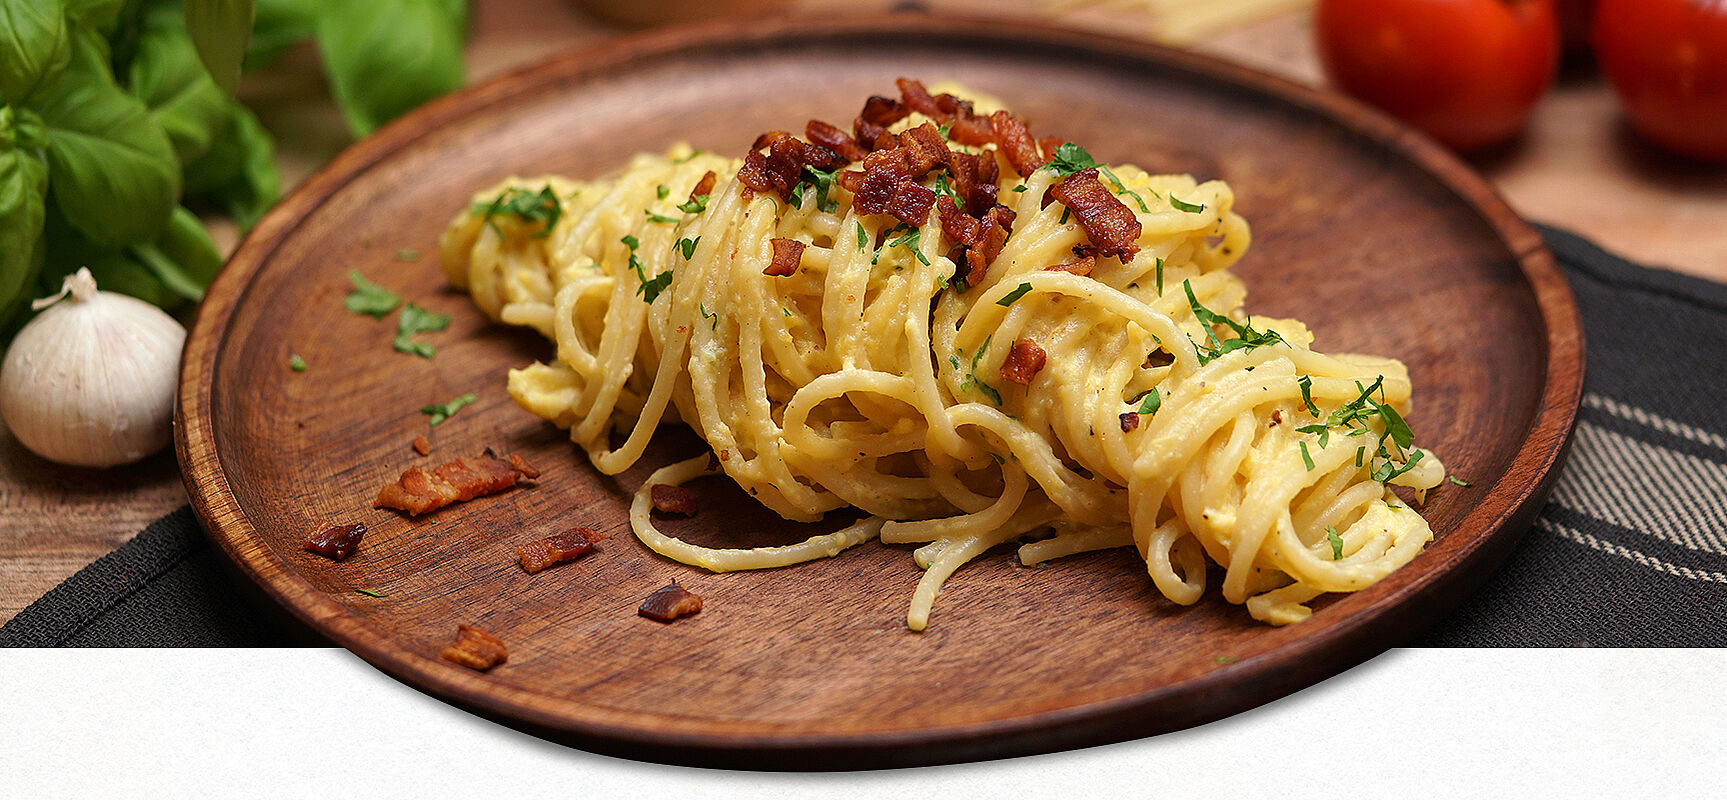 Original Spaghetti Carbonara auf einem Holzteller